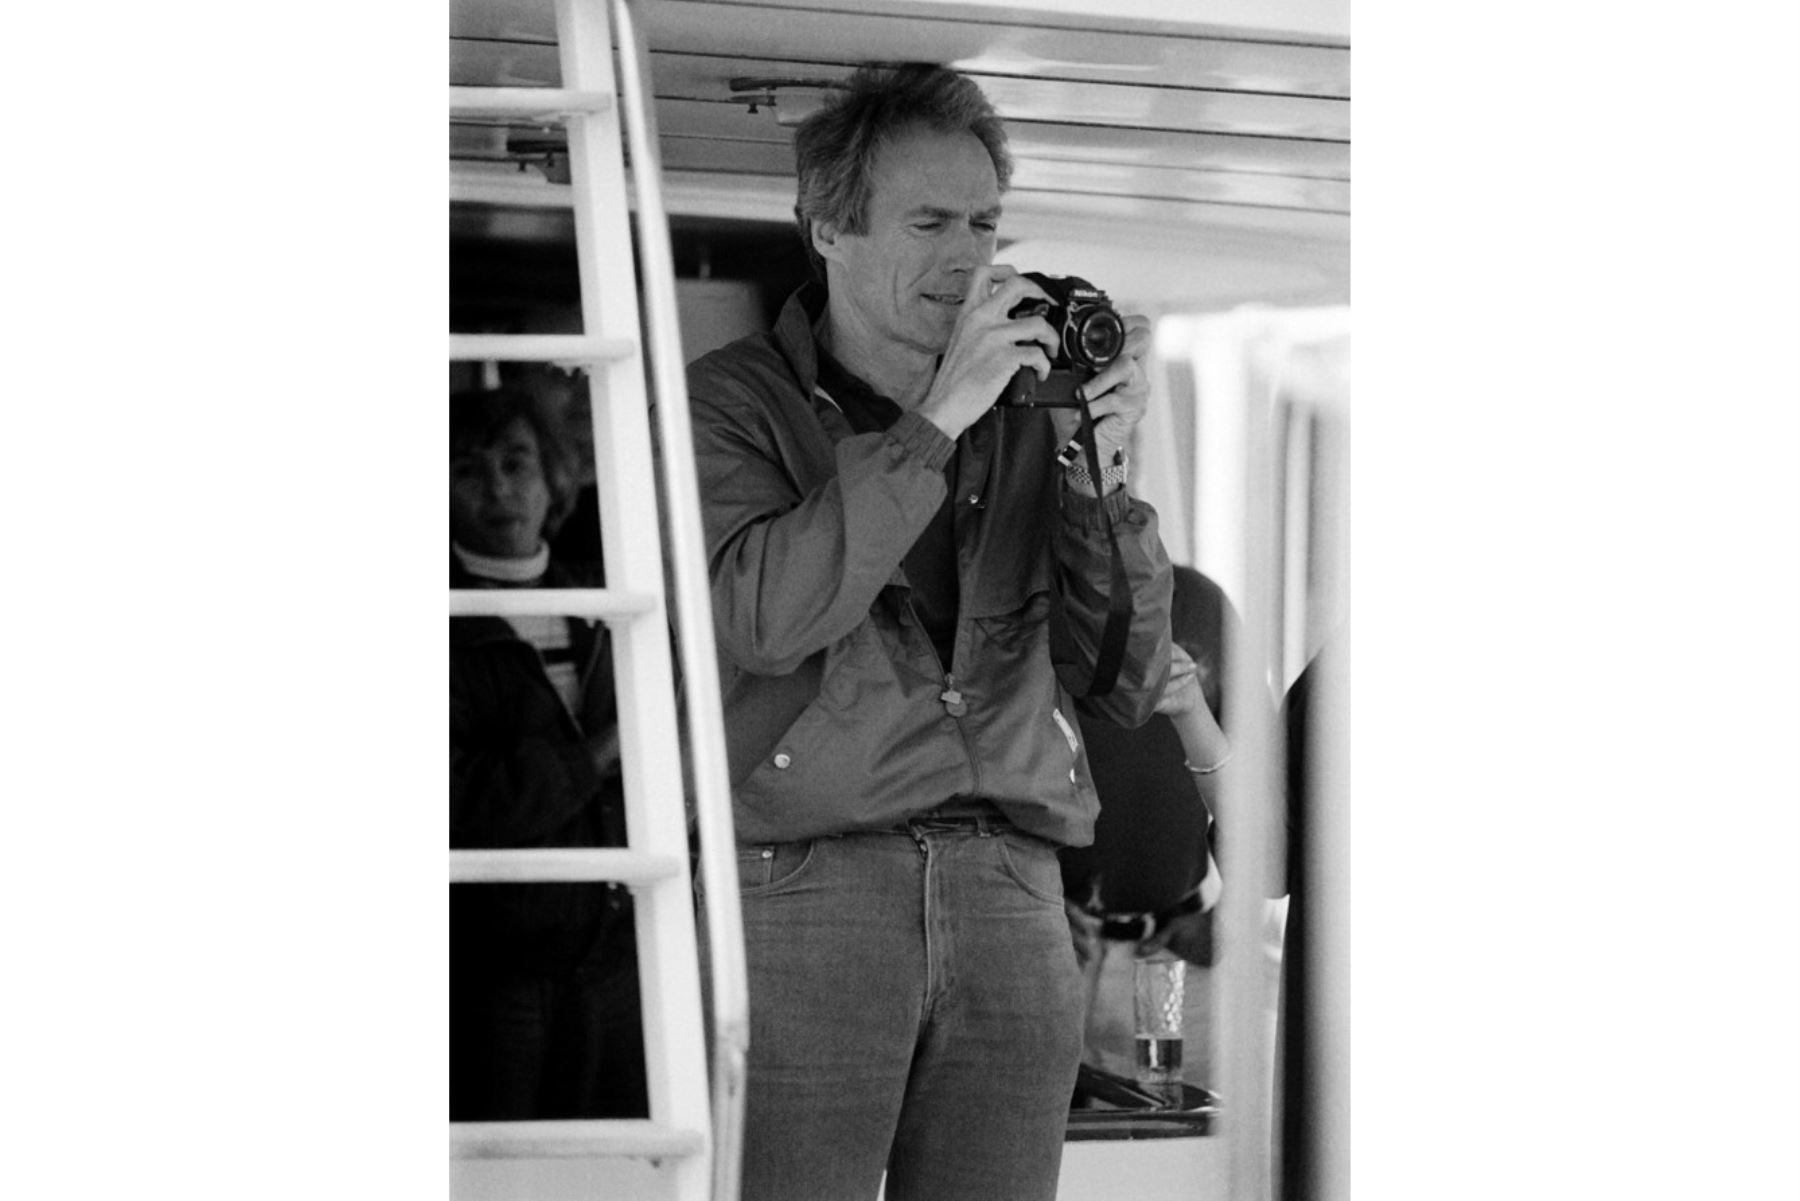 El actor y director estadounidense Clint Eastwood toma fotos el 10 de mayo de 1985 a bordo de su yate privado anclado en Cannes durante el 38 ° Festival Internacional de Cine, donde su película "Pale Rider" se presenta oficialmente en competencia. Foto: AFP